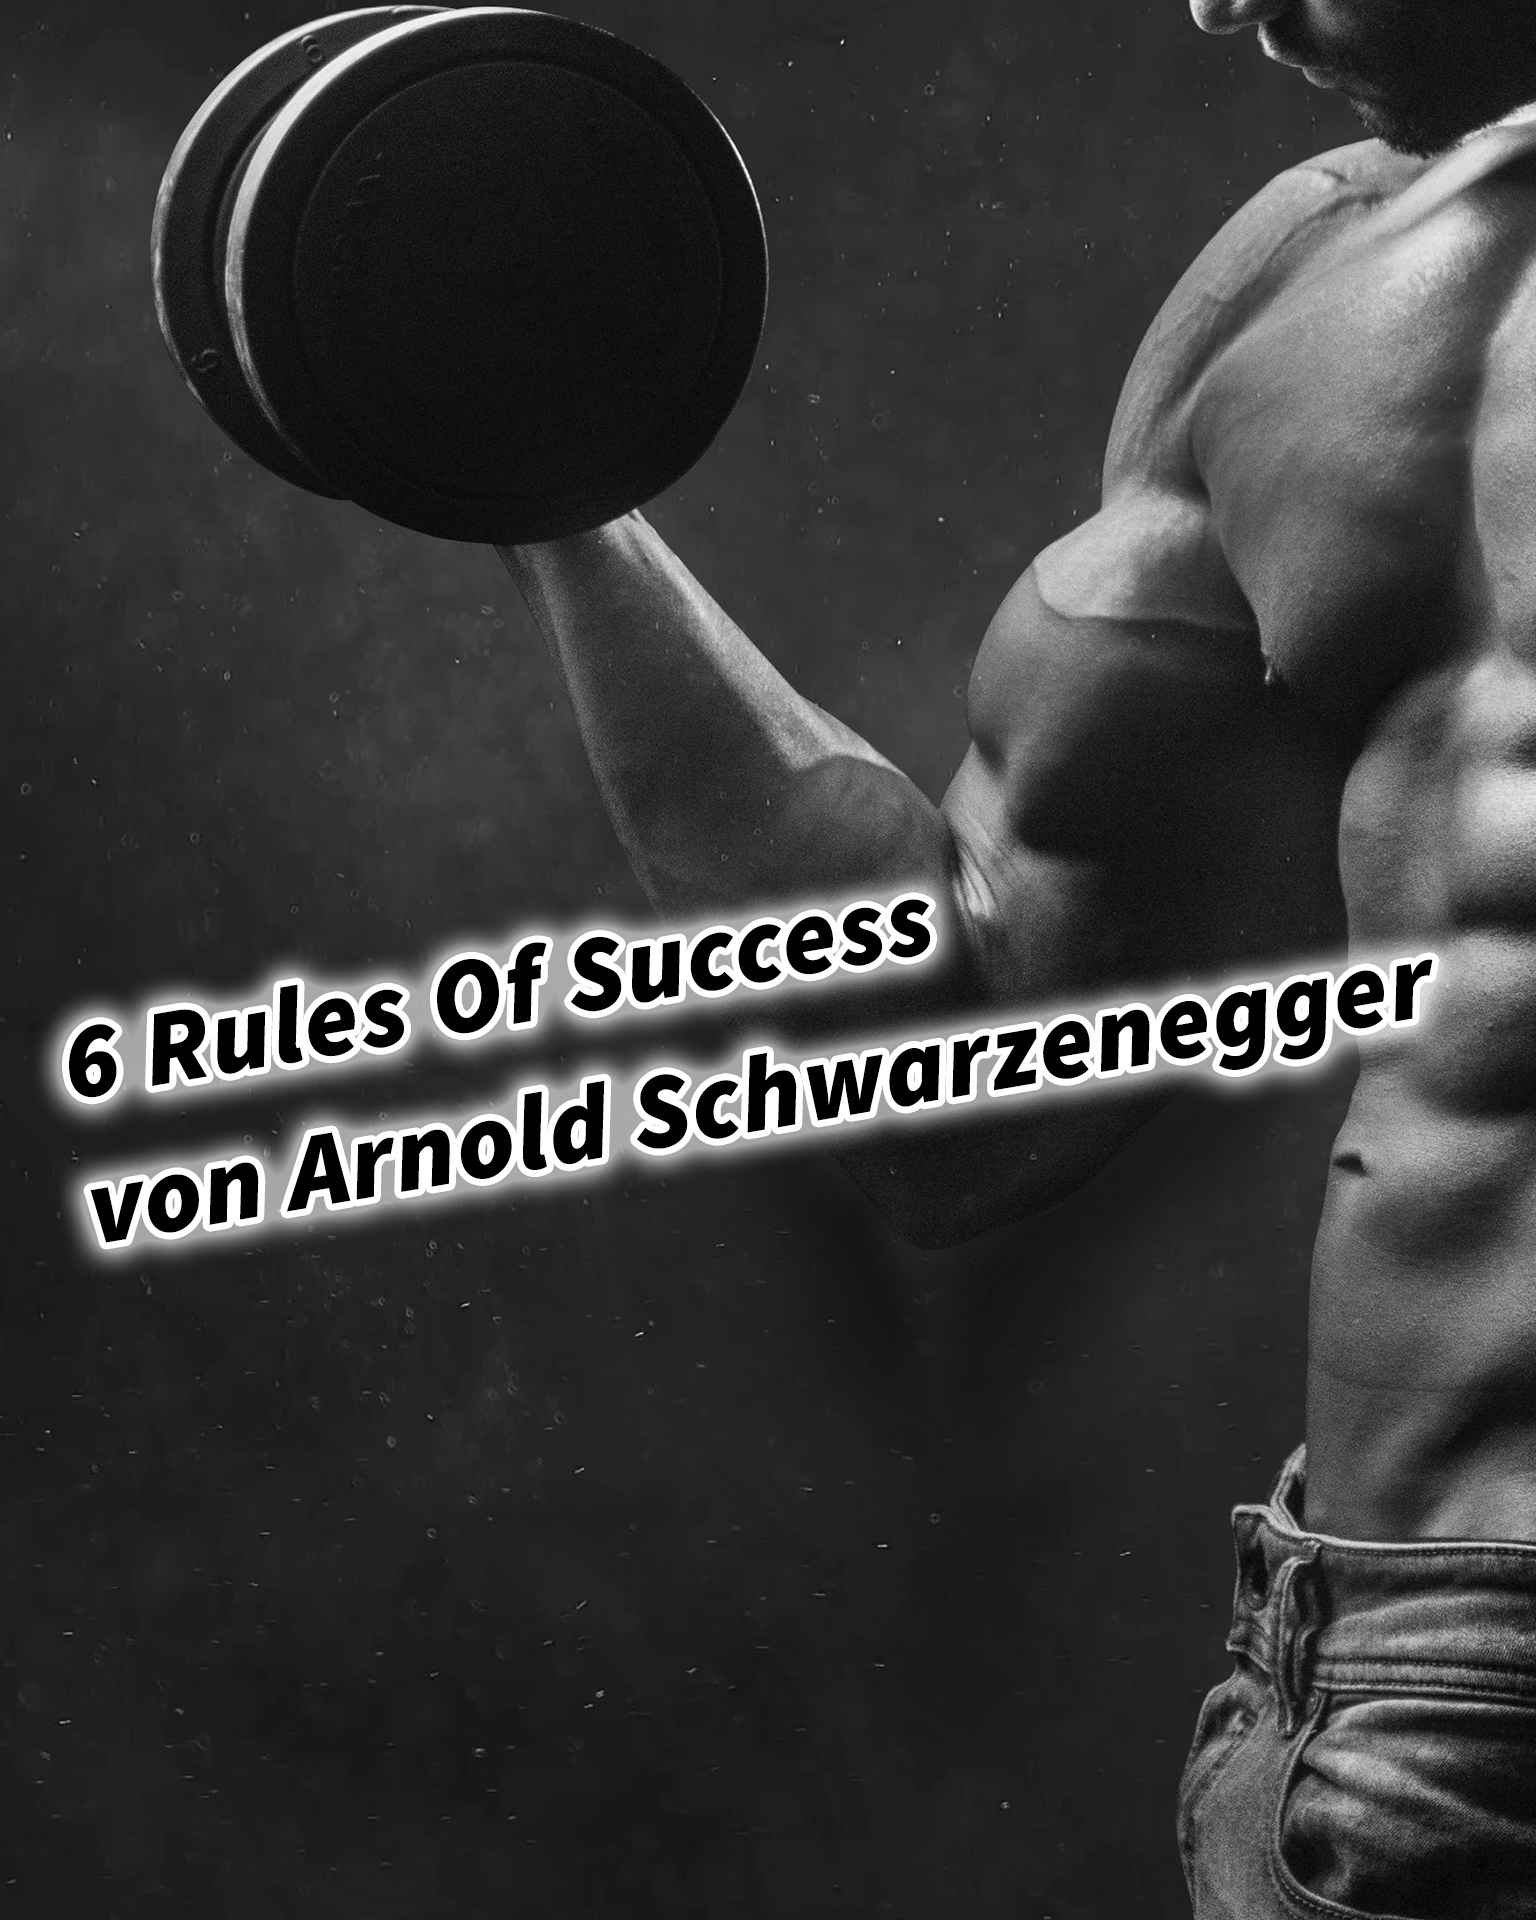 6 Rules Of Success von Arnold Schwarzenegger #GedankenZumLeben